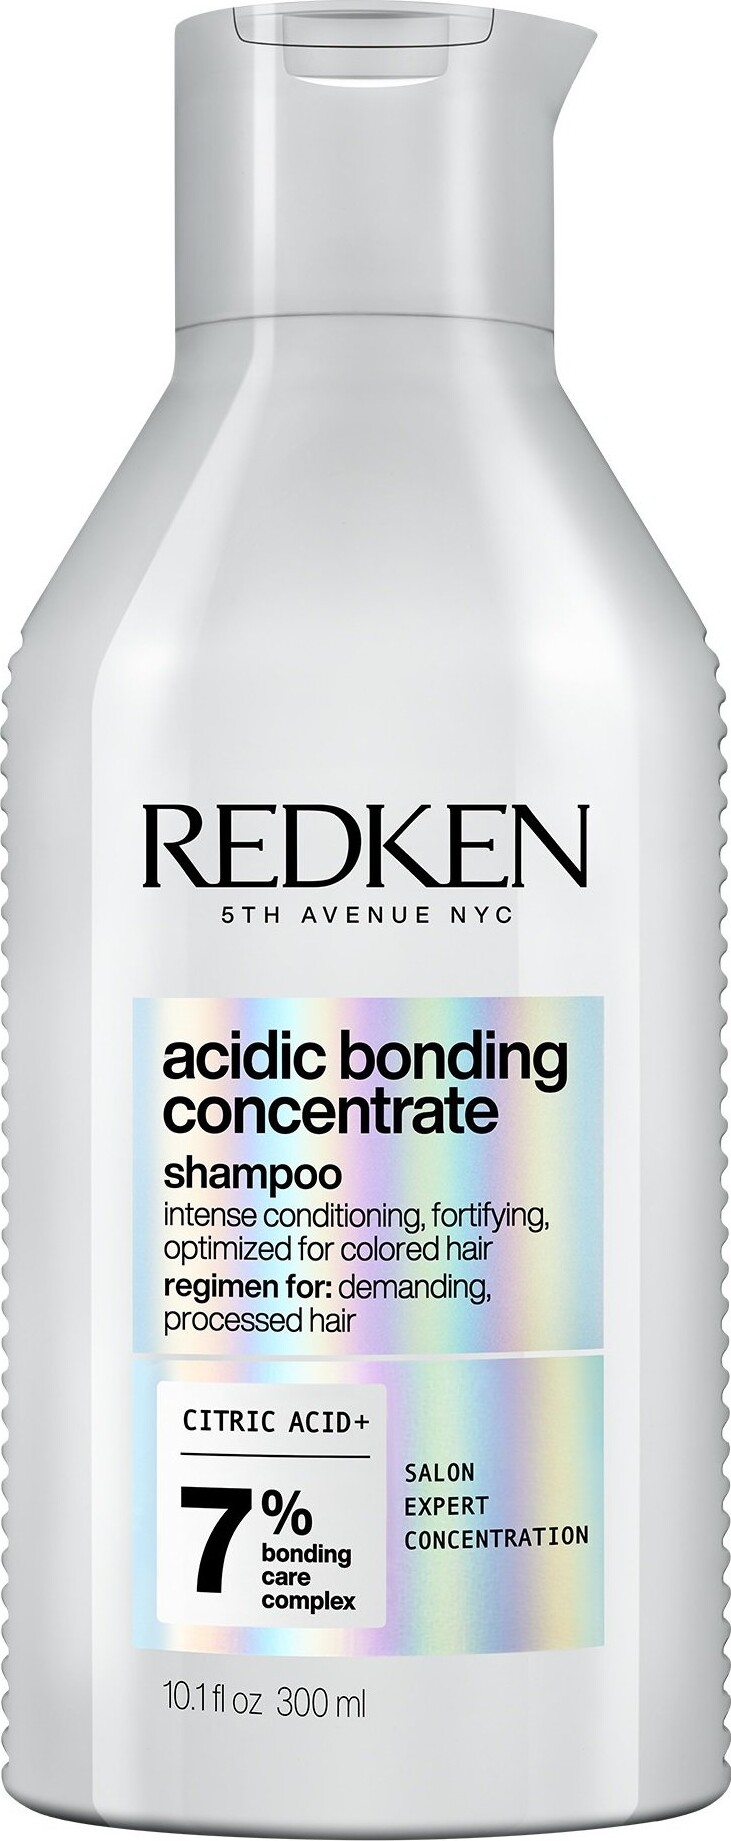 Billede af Redken - Acidic Bonding Concentrate Shampoo 300 Ml hos Gucca.dk